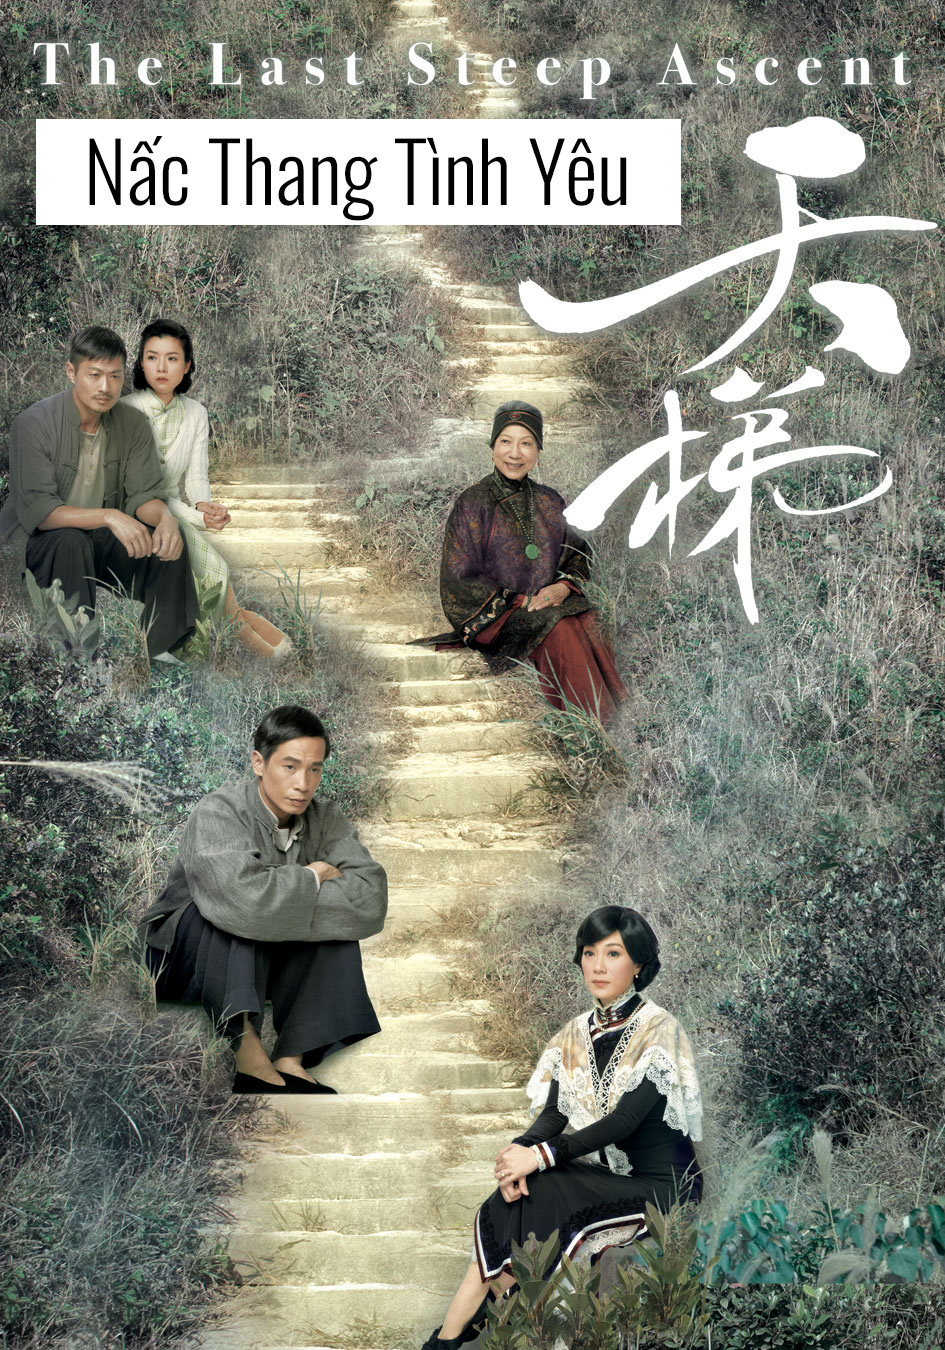 "Nấc Thang Tình Yêu TVB" - Khám Phá Bộ Phim Tình Cảm Đầy Cảm Xúc Của Đài TVB